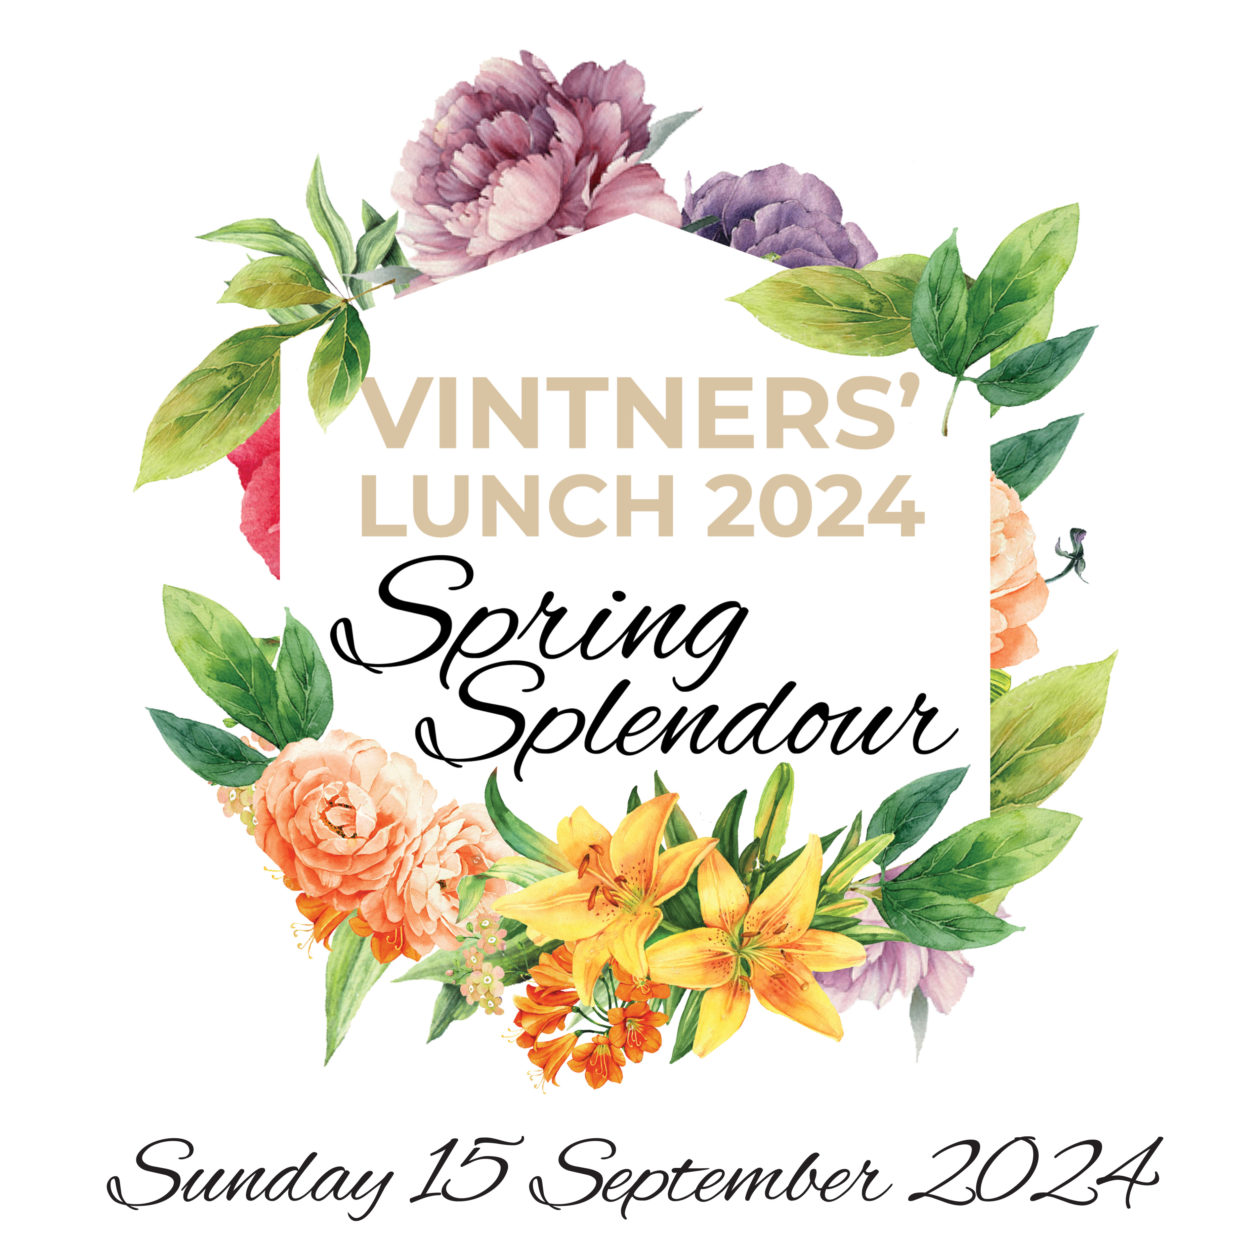 Vintners' Lunch 2024 - Spring Splendour thumbnail image